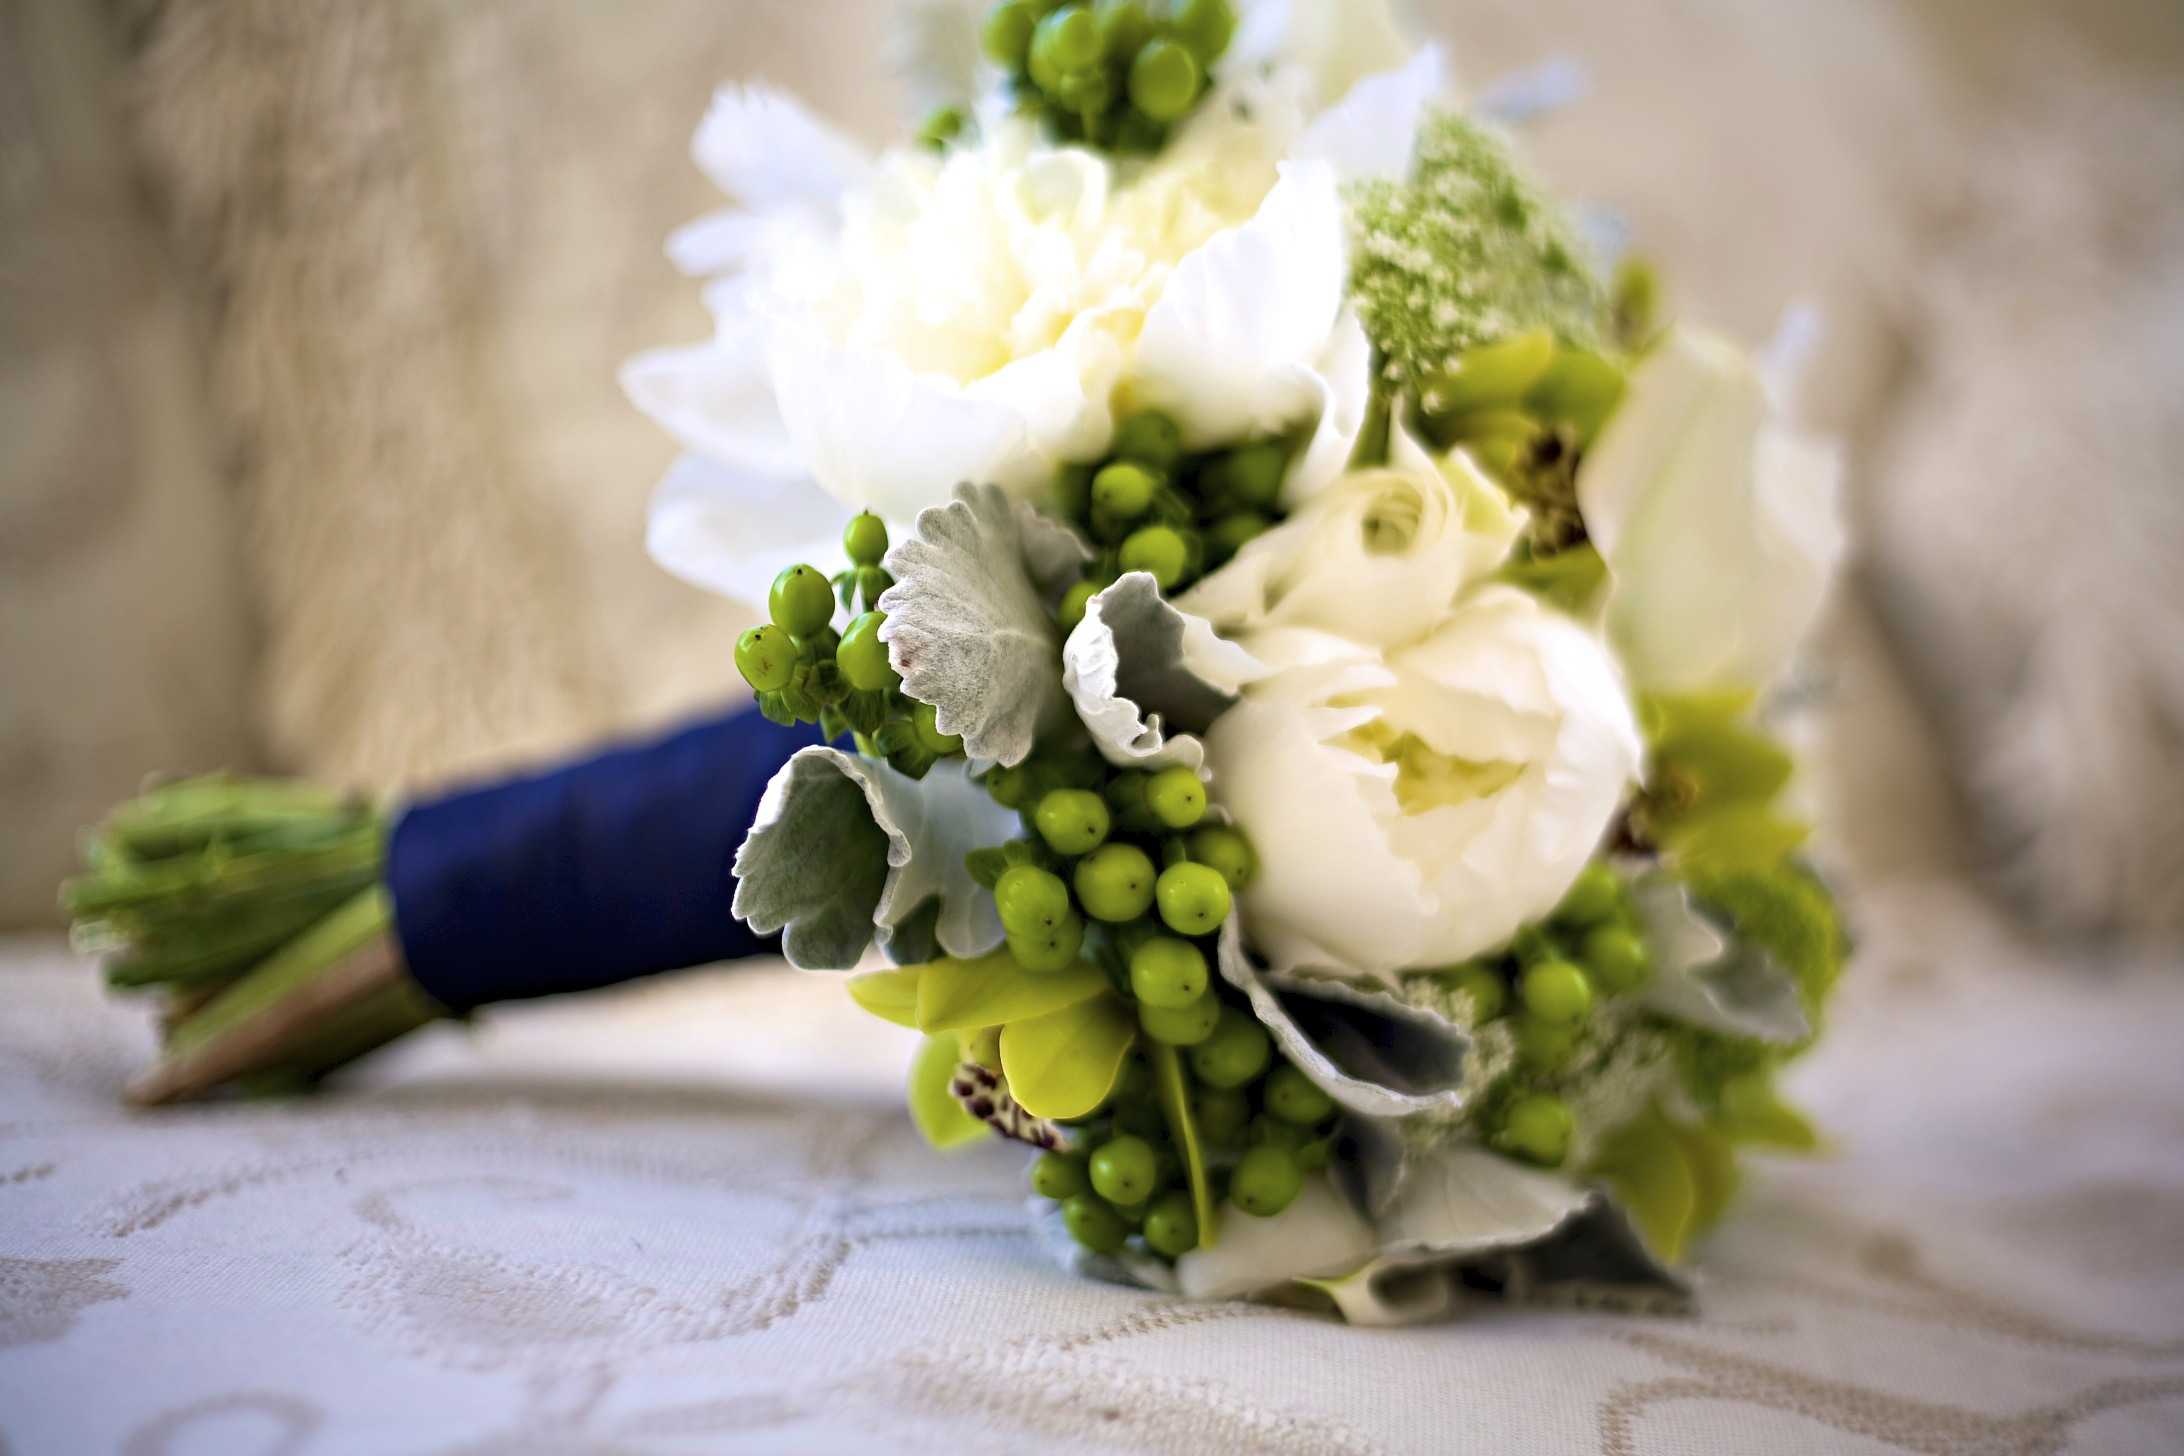 Бело зеленый букет невесты подчеркнет ее свежесть и чистоту Какие цветы используют флористы при создании таких композиций для новобрачных Как выбрать компоненты букета в соответствии с временем года